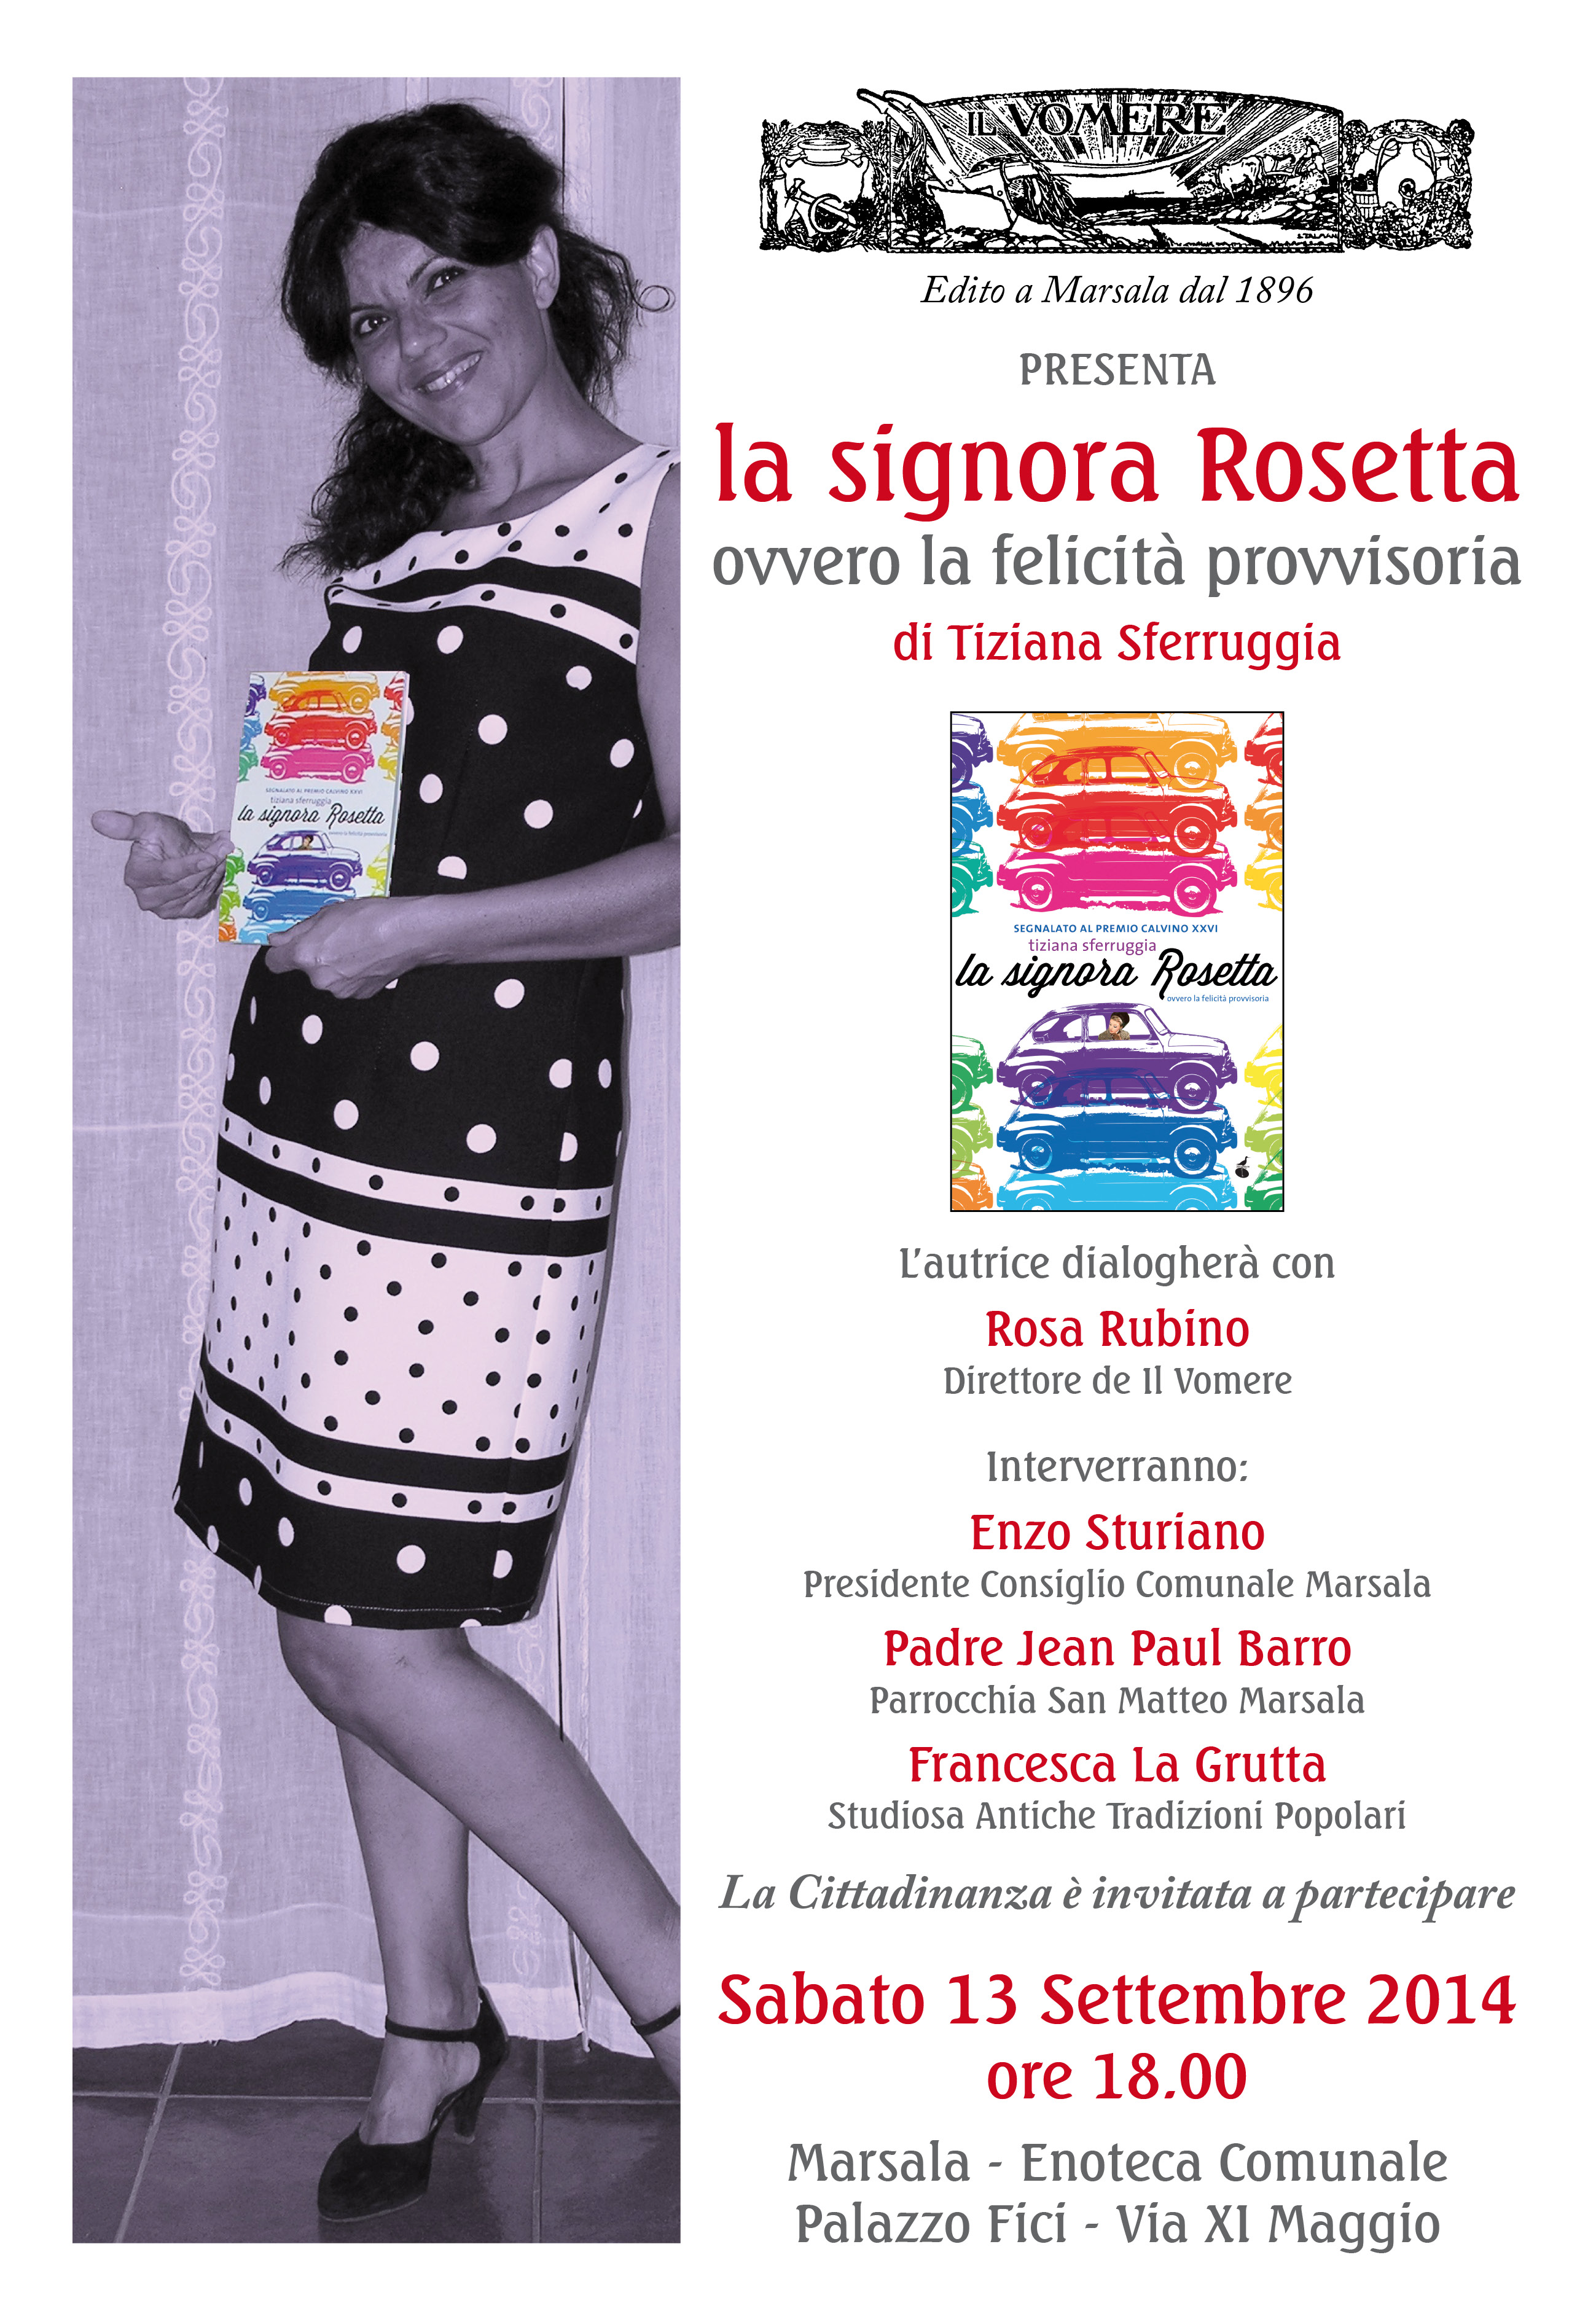 All’enoteca comunale la presentazione del libro “La signora Rosetta”